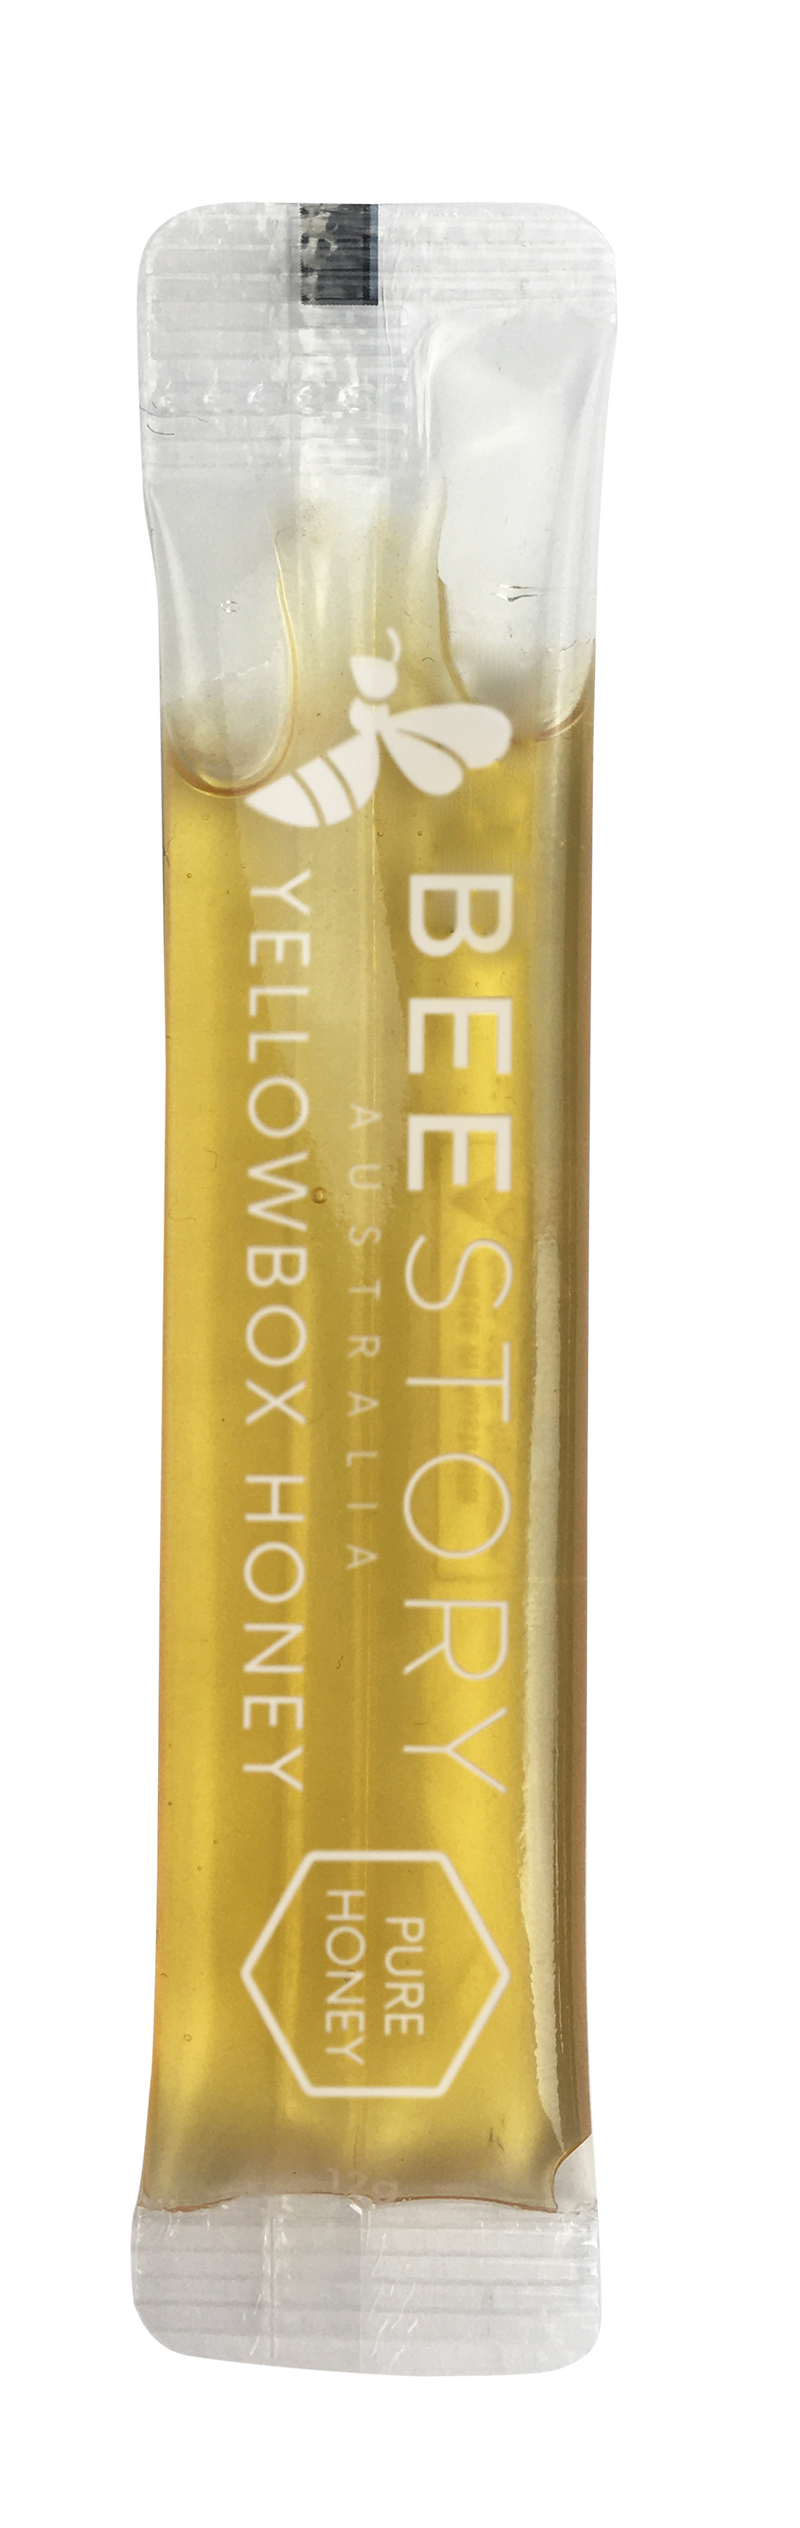 BEESTORY Yellowbox Honey Stick Low GI (12g x 30 sticks)